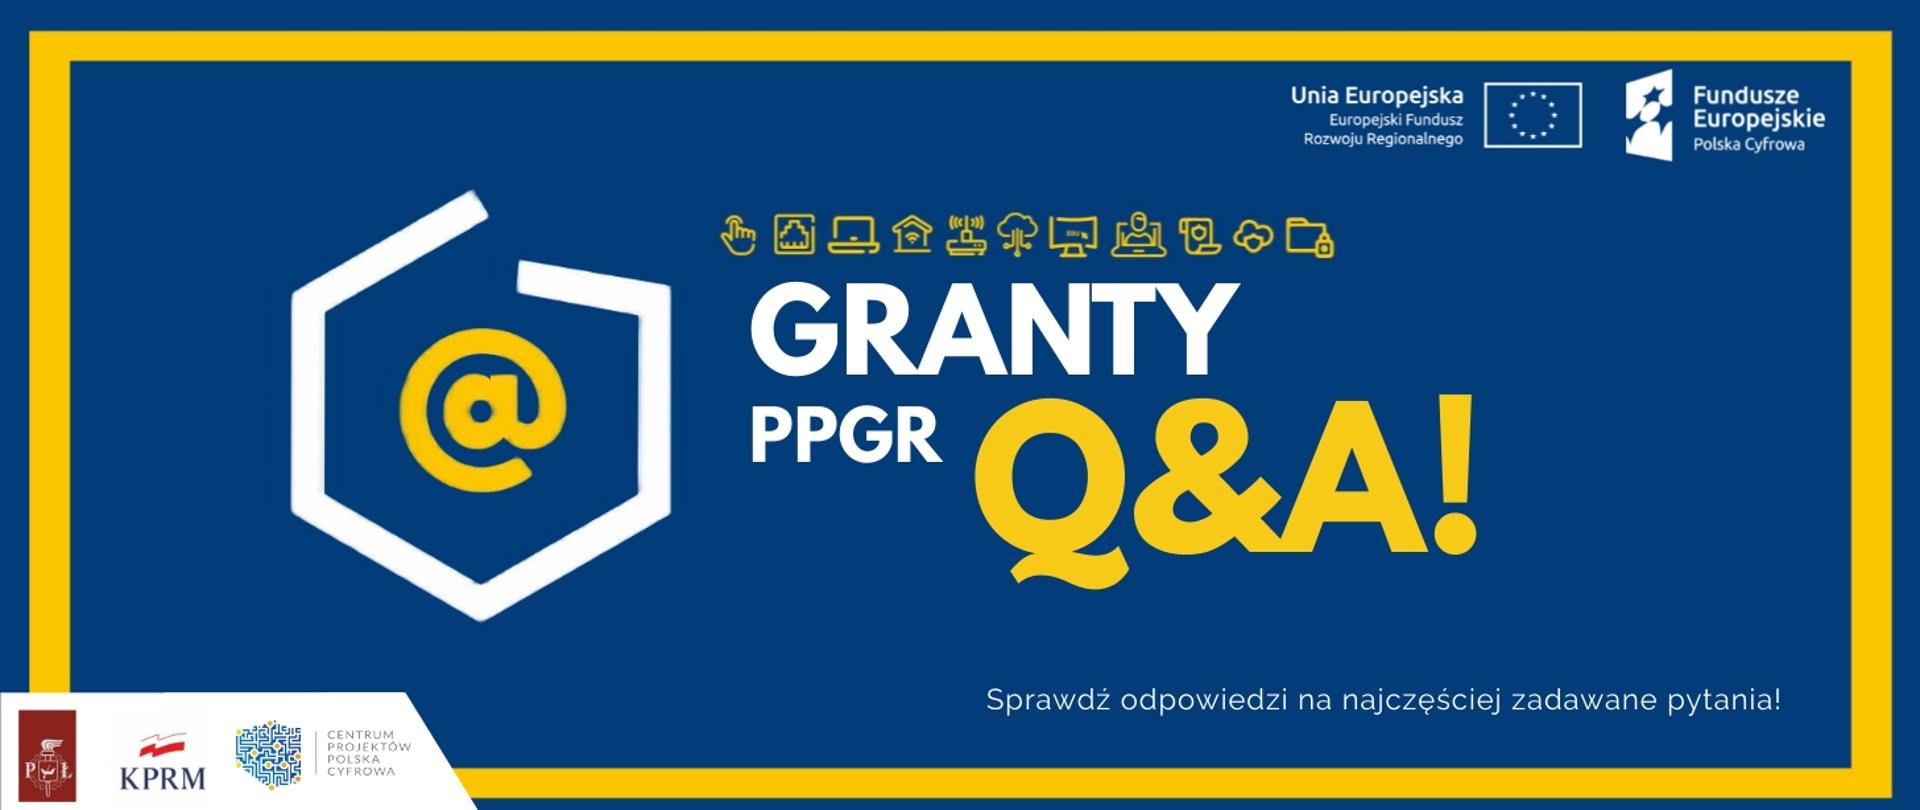 Na zdjęciu znajduje się napis "Granty PPGR Q&A - sprawdź odpowiedzi na najczęściej zadawane pytania". Napisy zamieszczone na niebieskim tle w żółtej ramce.